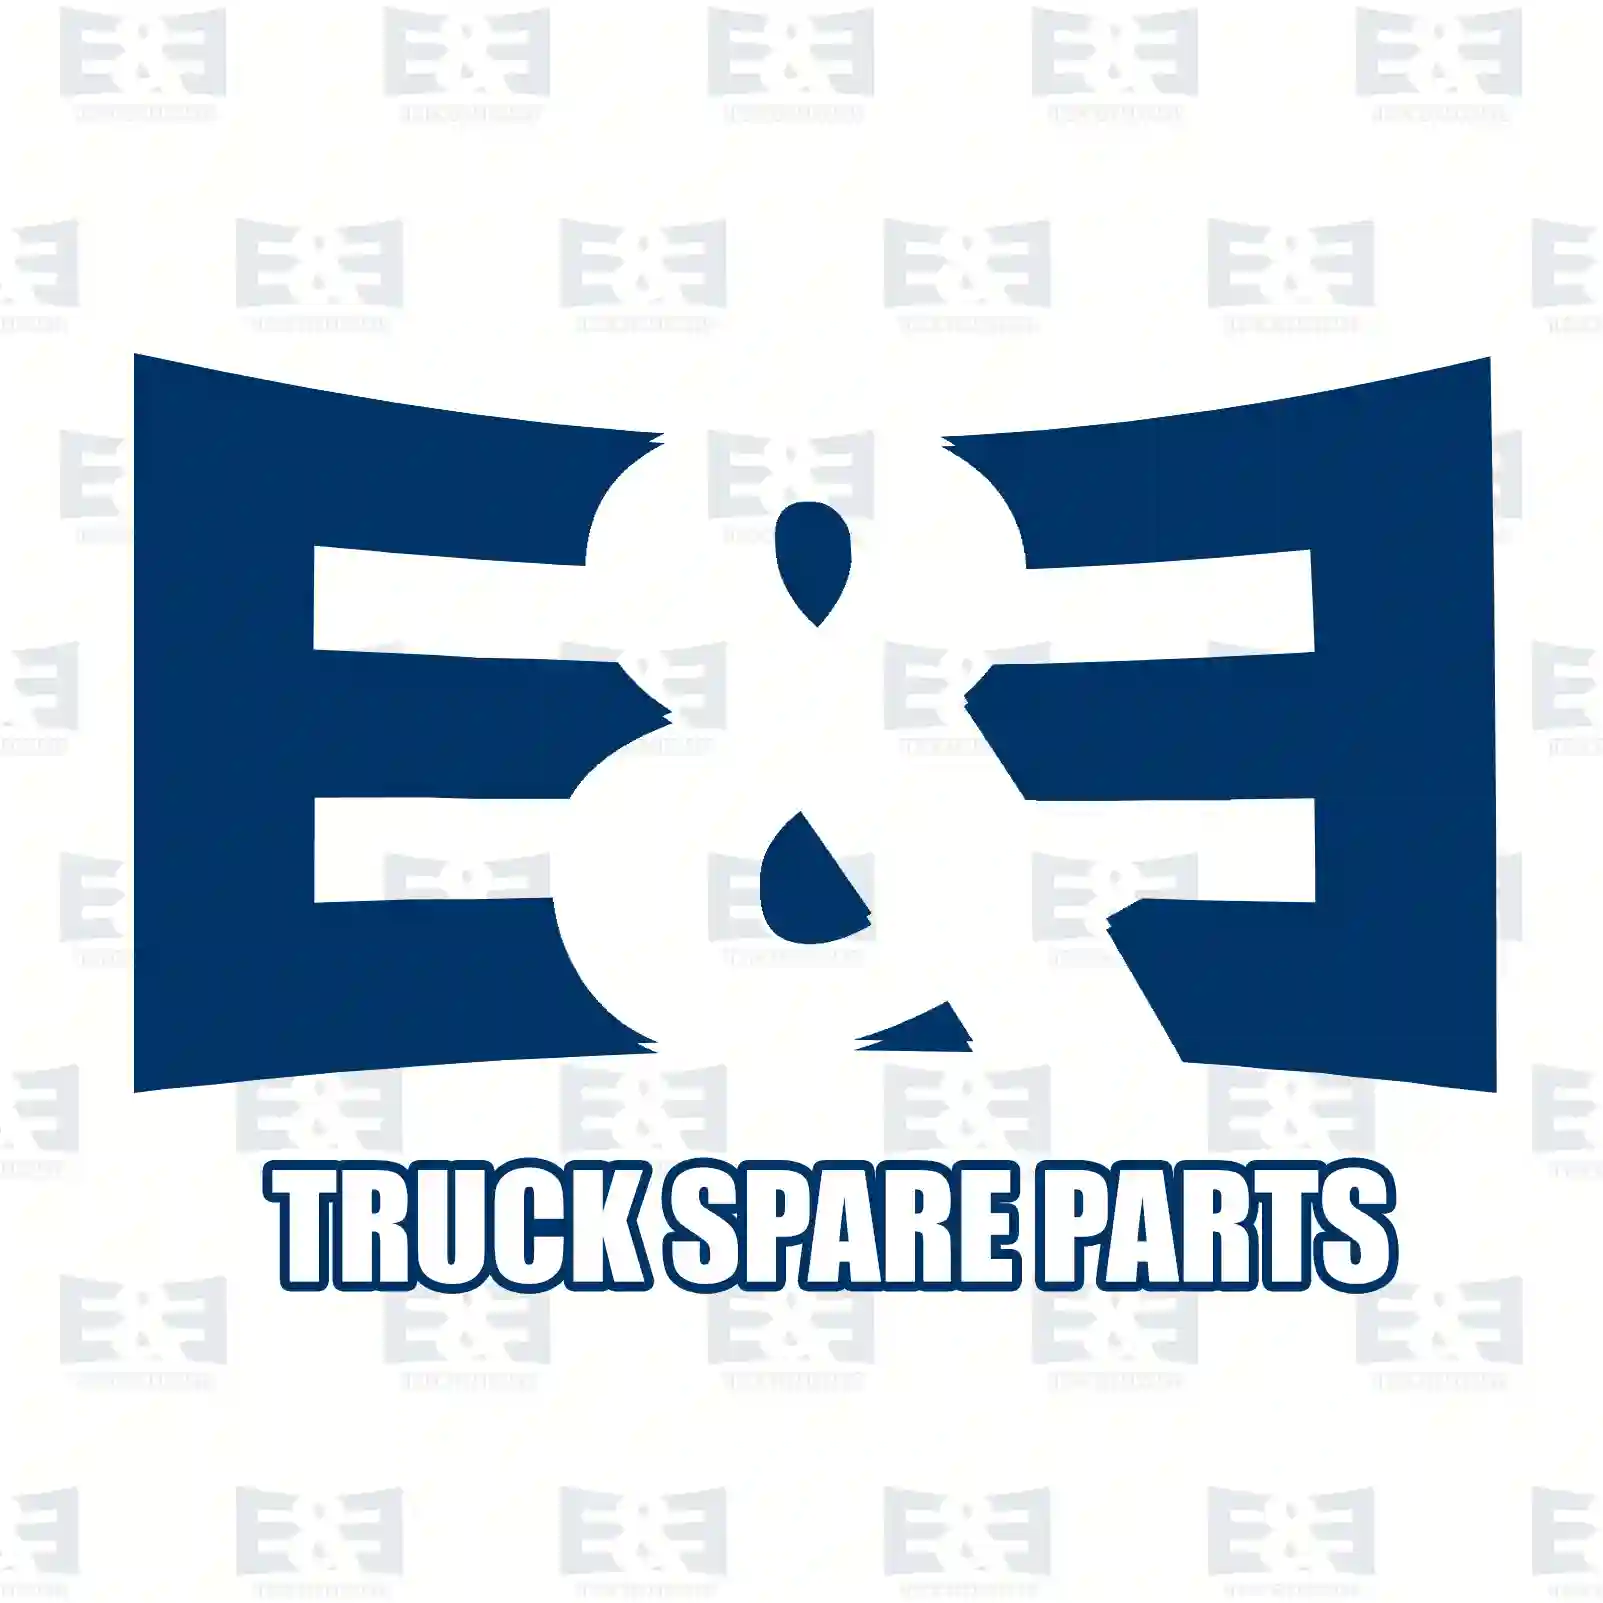 Clutch disc, 2E2289102, 1-31240733-0, 1-31240905-0, 1-31260026-0, 81303010299, 81303019299, 81303010299, 5010452026, 7420927842, 632101600 ||  2E2289102 E&E Truck Spare Parts | Truck Spare Parts, Auotomotive Spare Parts Clutch disc, 2E2289102, 1-31240733-0, 1-31240905-0, 1-31260026-0, 81303010299, 81303019299, 81303010299, 5010452026, 7420927842, 632101600 ||  2E2289102 E&E Truck Spare Parts | Truck Spare Parts, Auotomotive Spare Parts